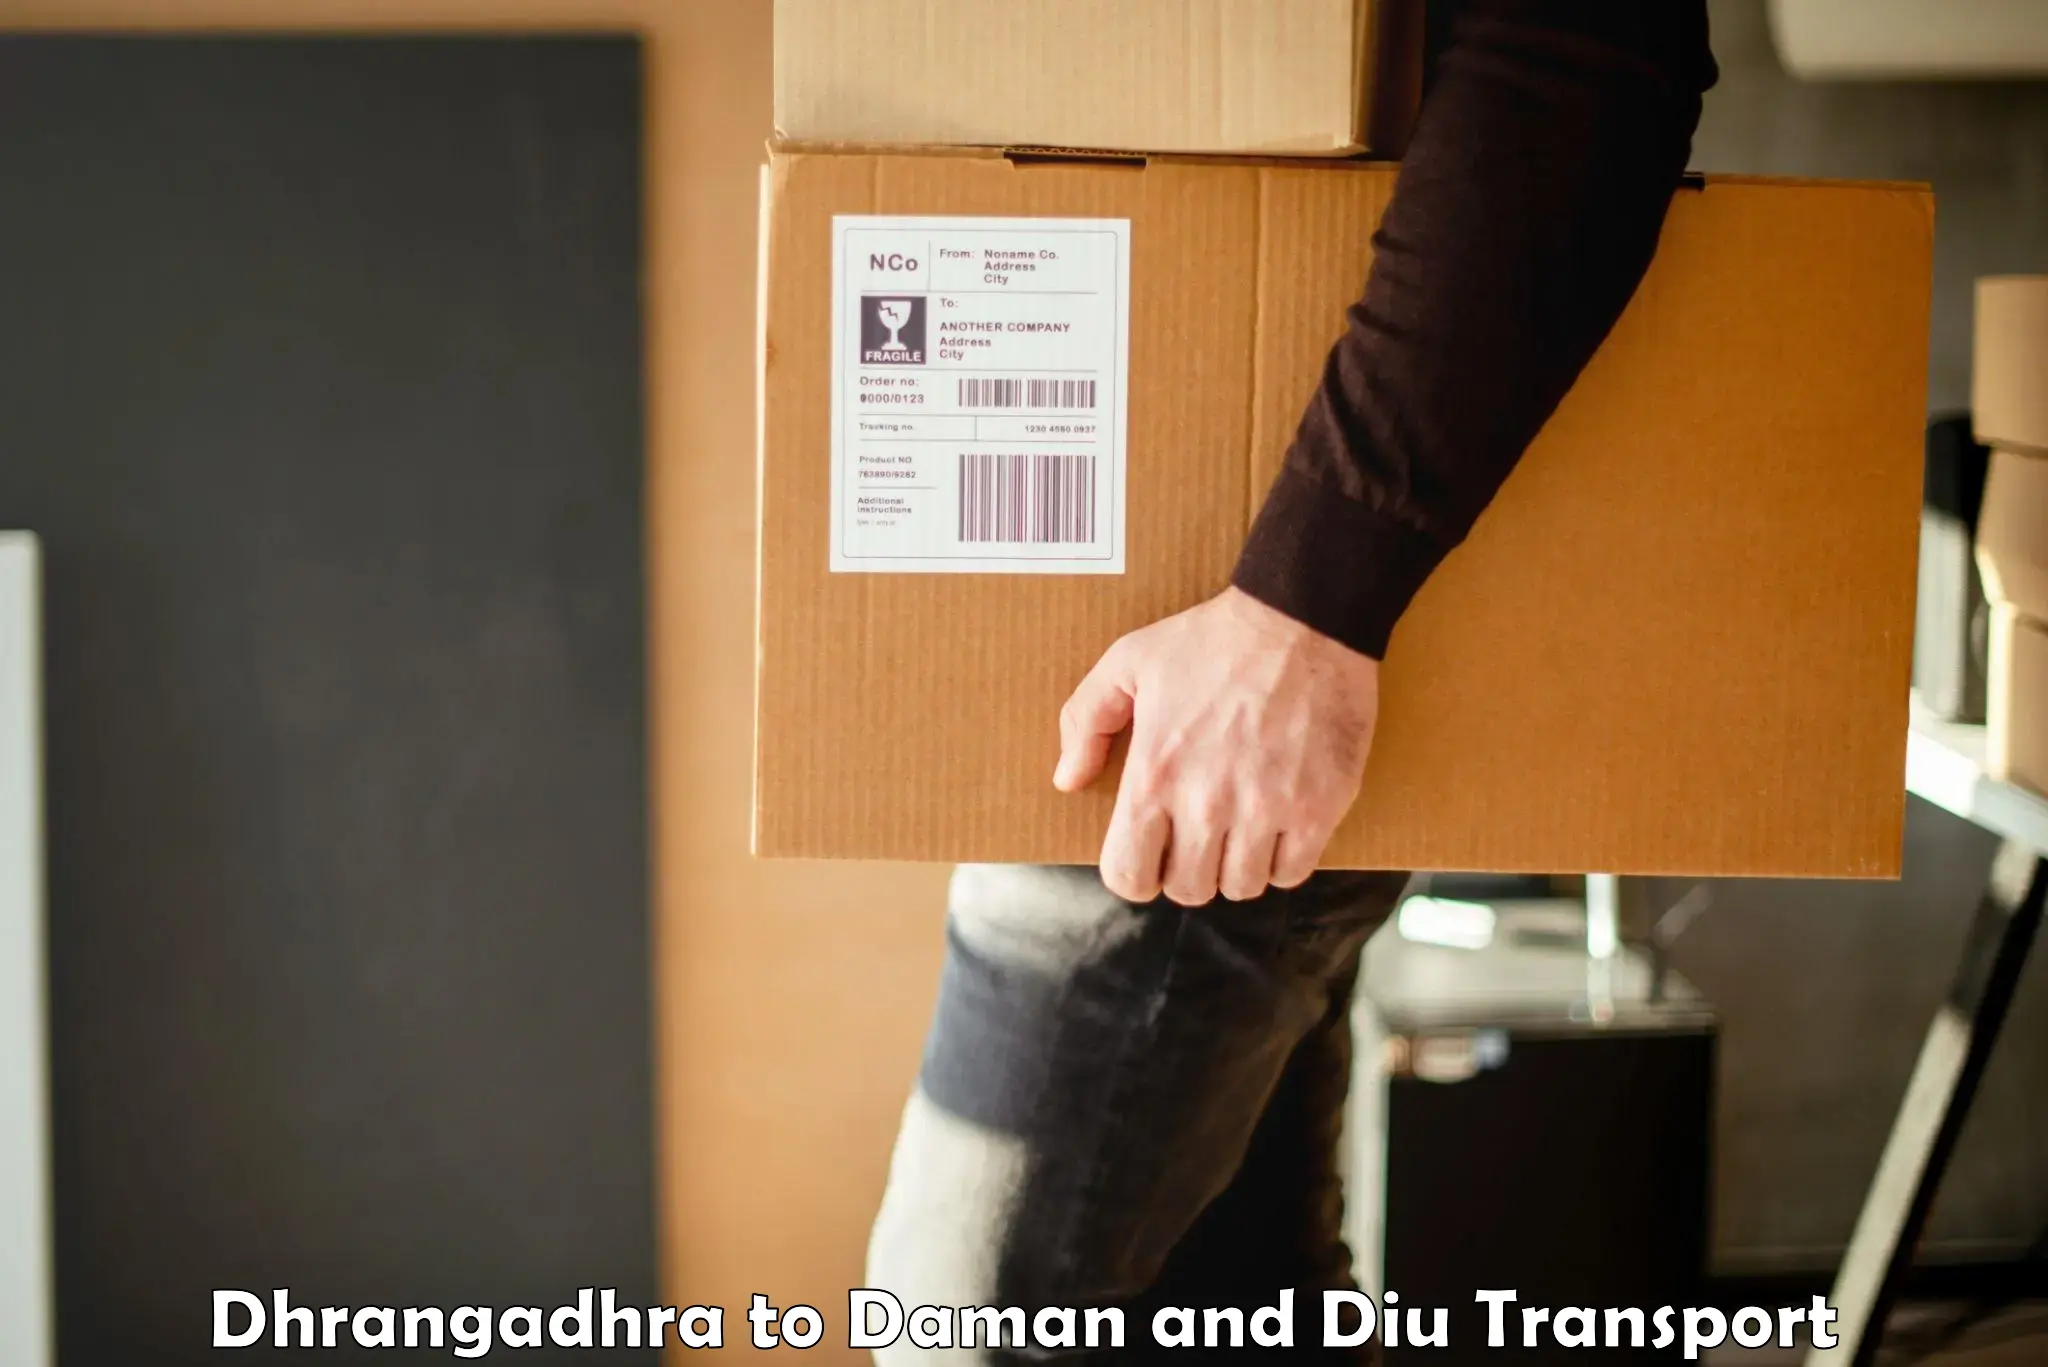 Daily transport service Dhrangadhra to Daman and Diu